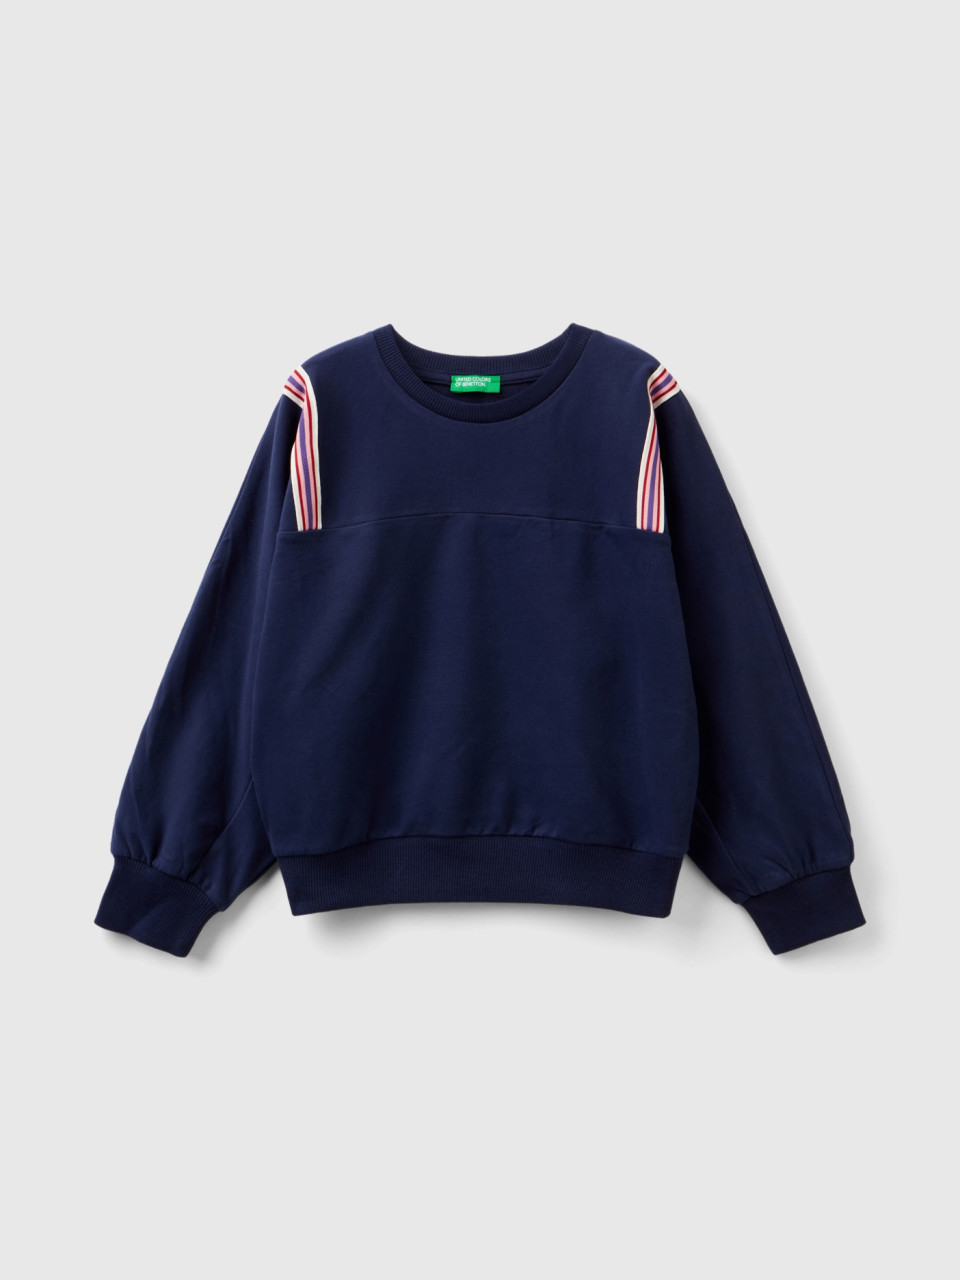 Benetton, Sweatshirt With Striped Details, Dark Blue, Kids